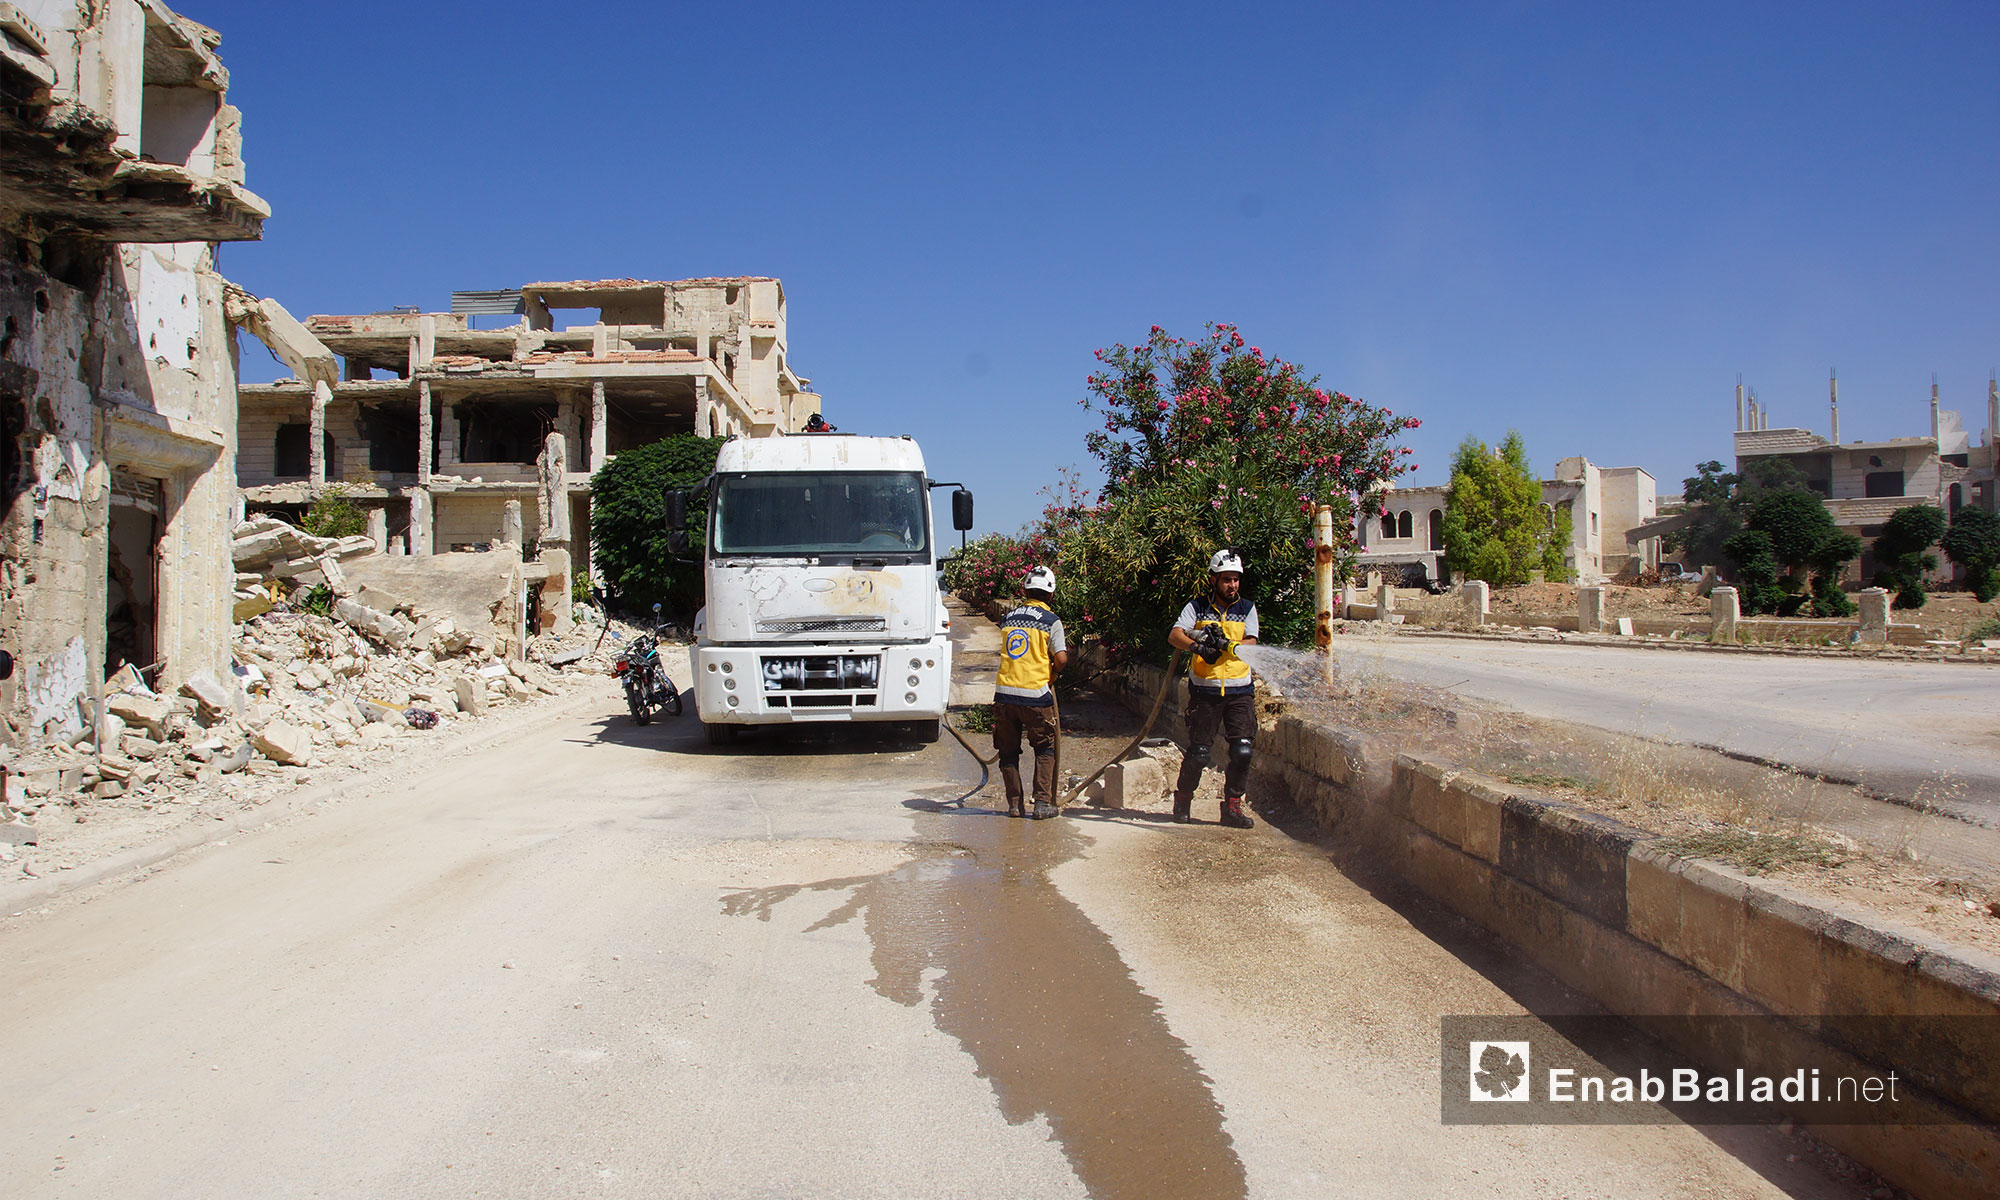 عناصر من الدفاع المدني يقومون بعملية تنظيف للطرقات ضمن حملة "إحياء الأرض" في مدينة مورك بريف حماة - 7 تموز 2018 (عنب بلدي)